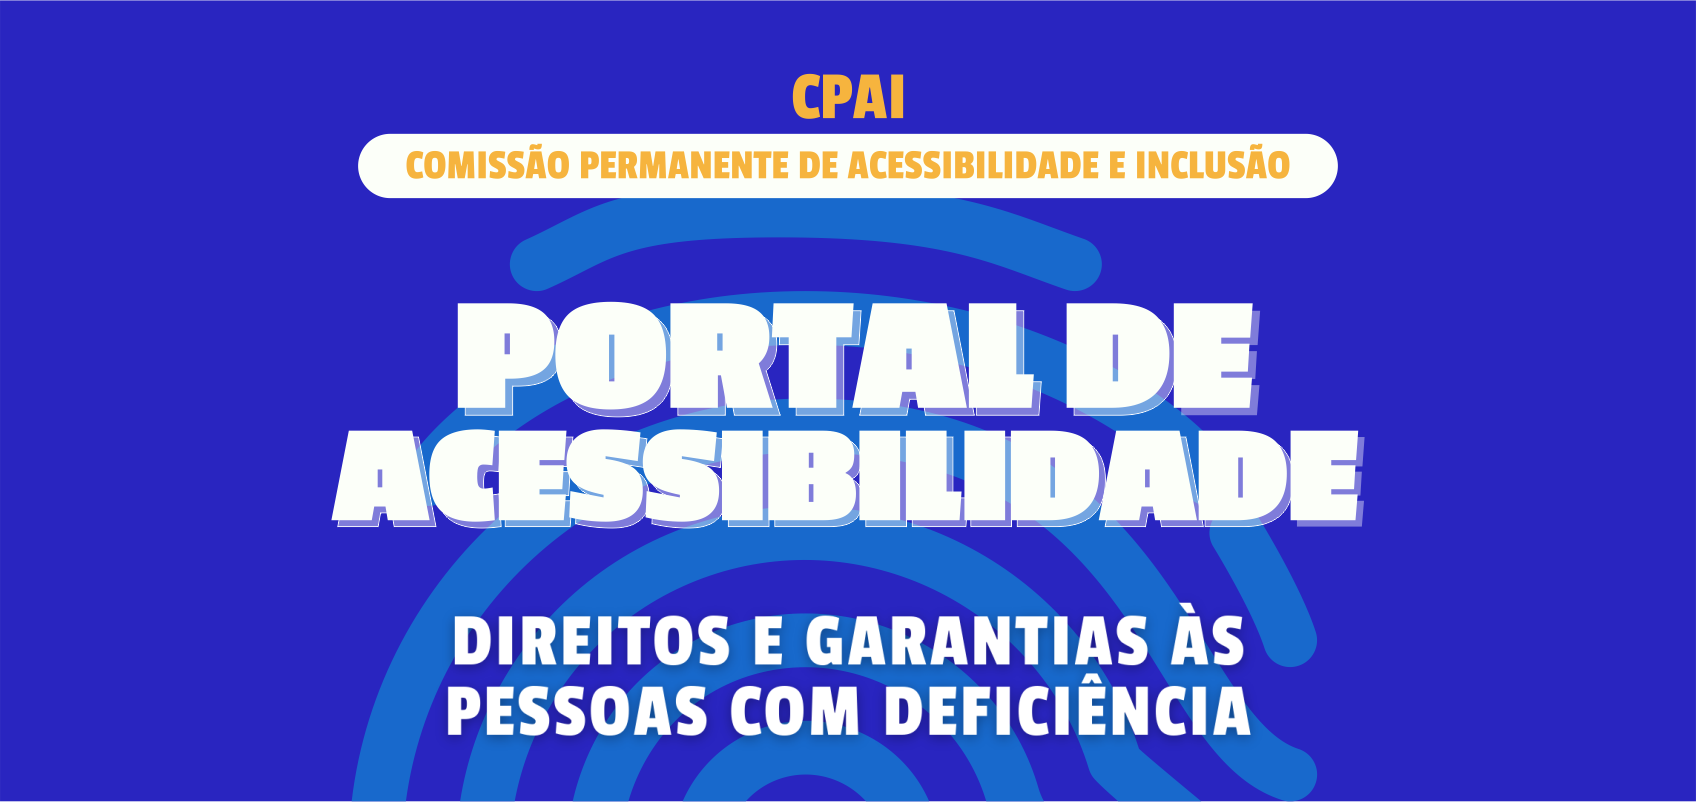 Portal de Acessibilidade - Direitos e Garantias às Pessoas com Deficiência